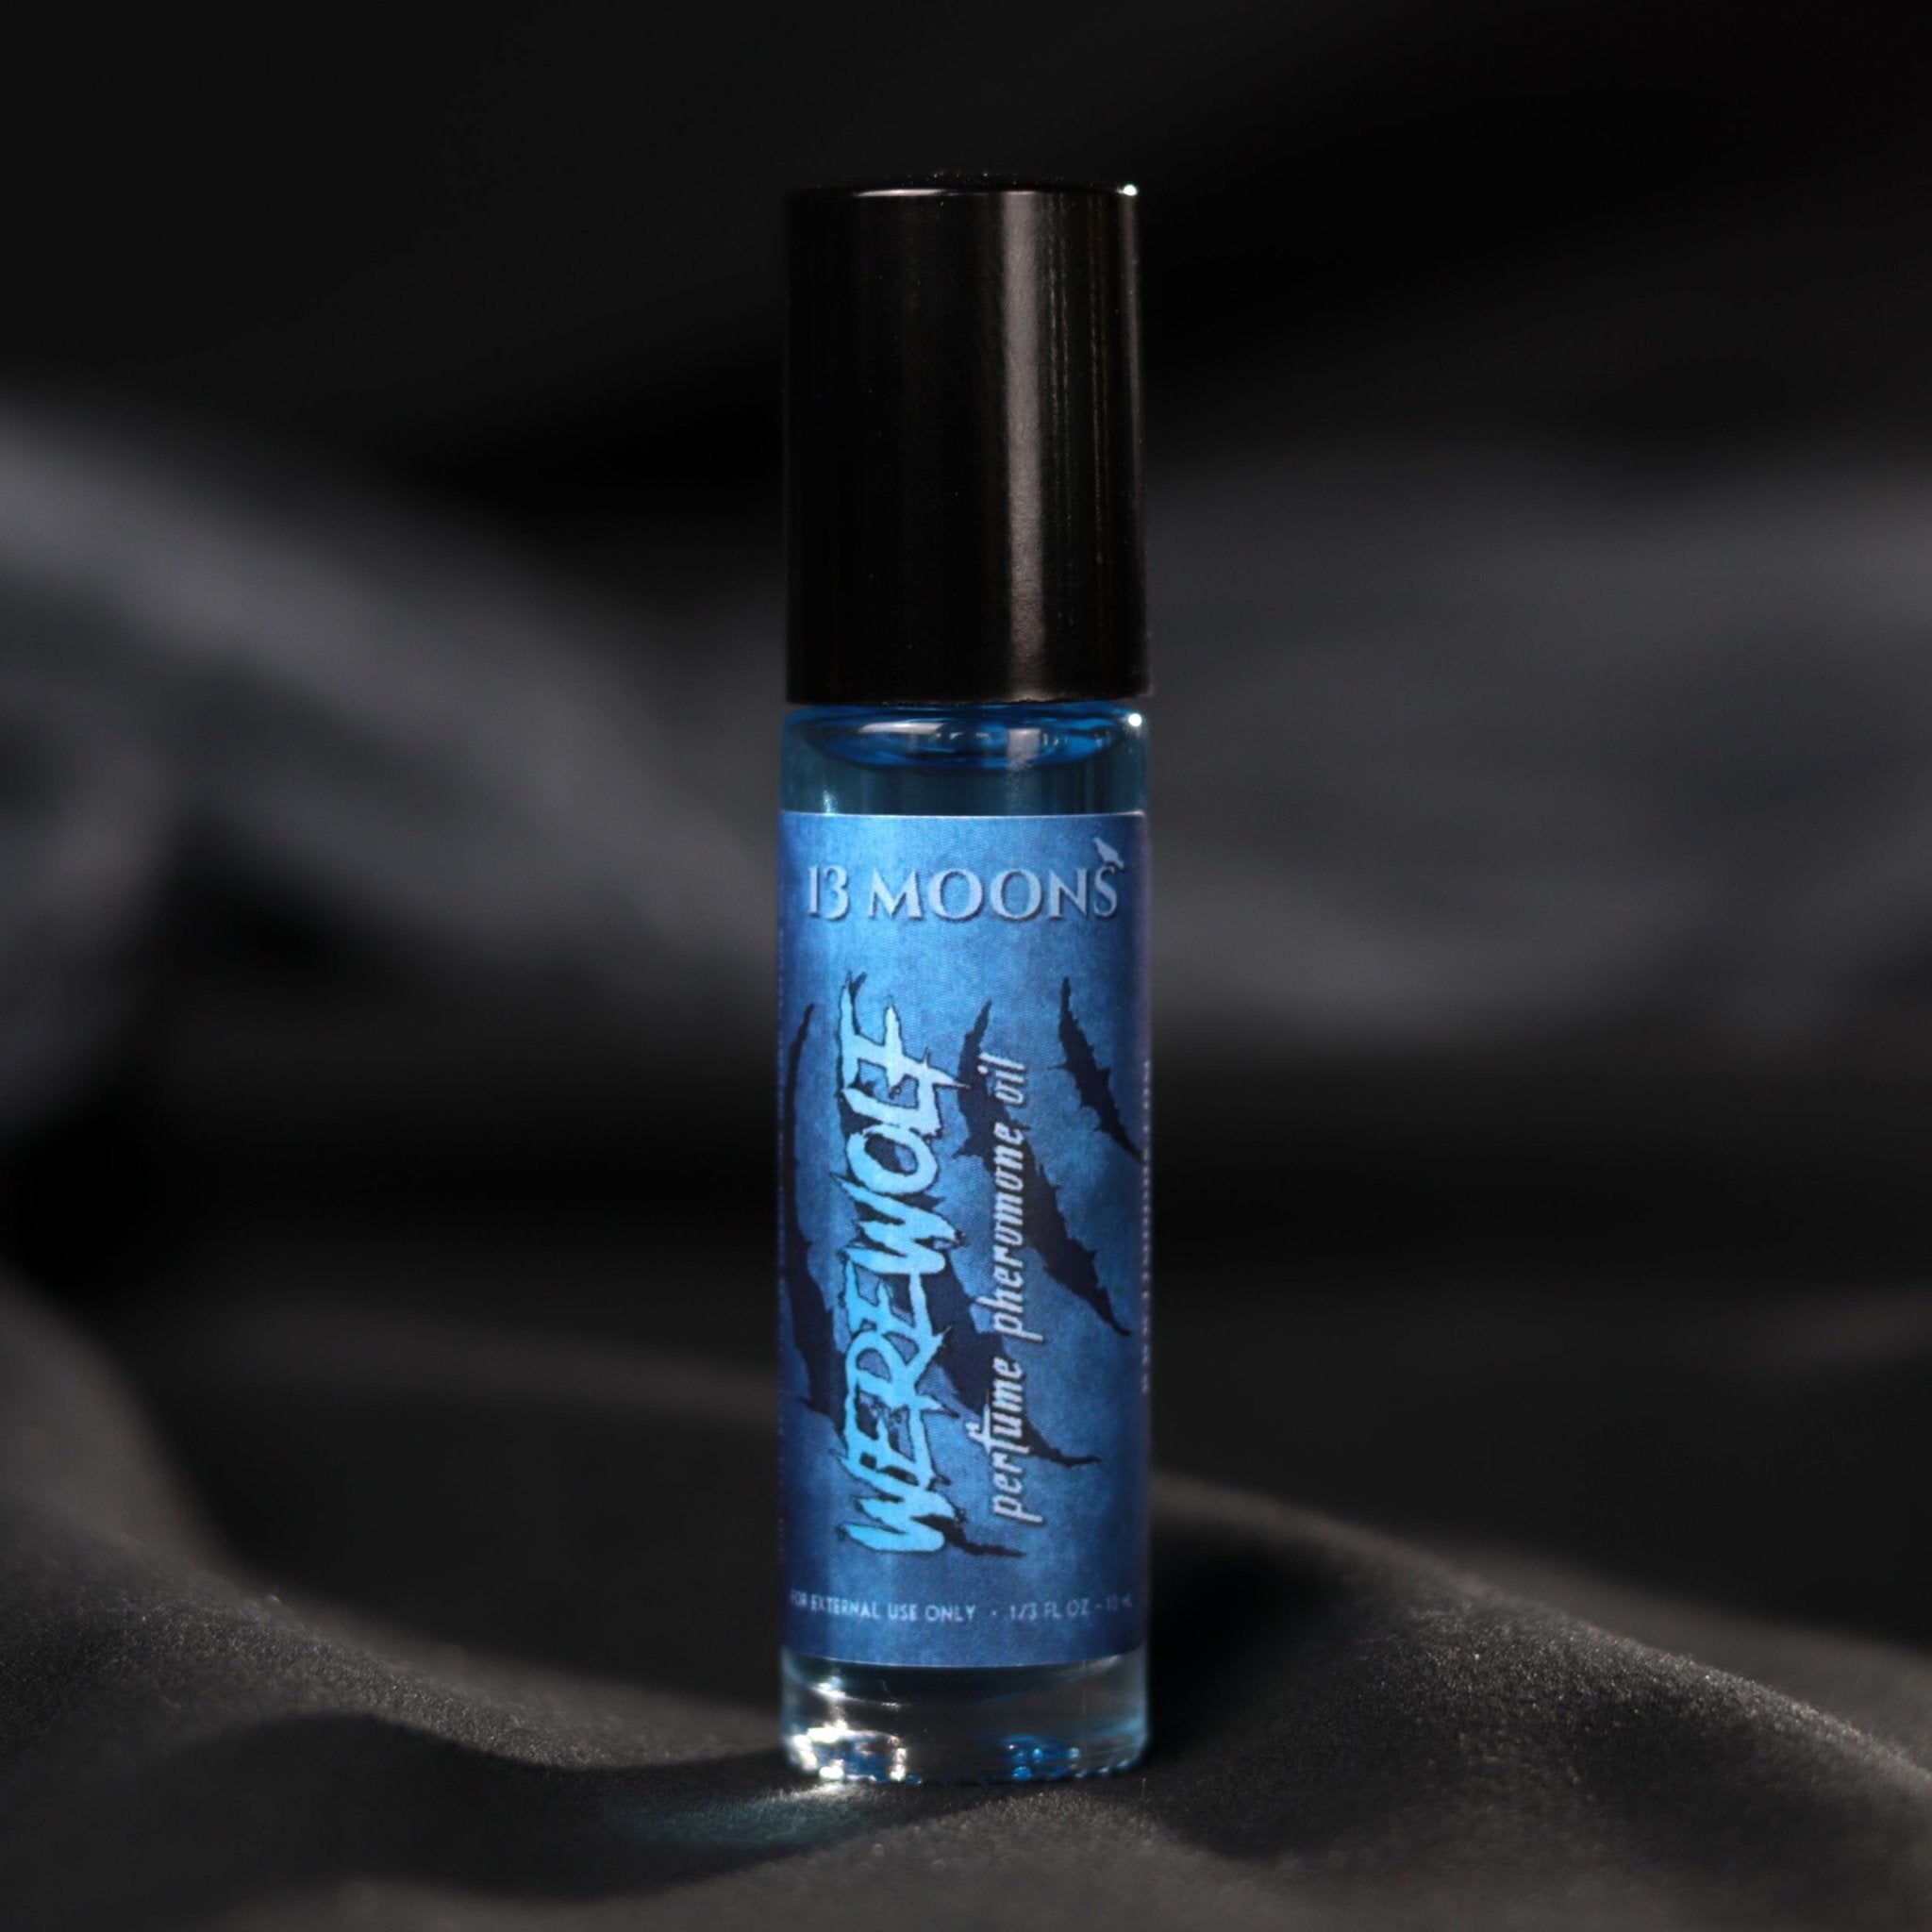 Werewolf Pheromone Infused Perfume Roll-on Oil - 13 Moons